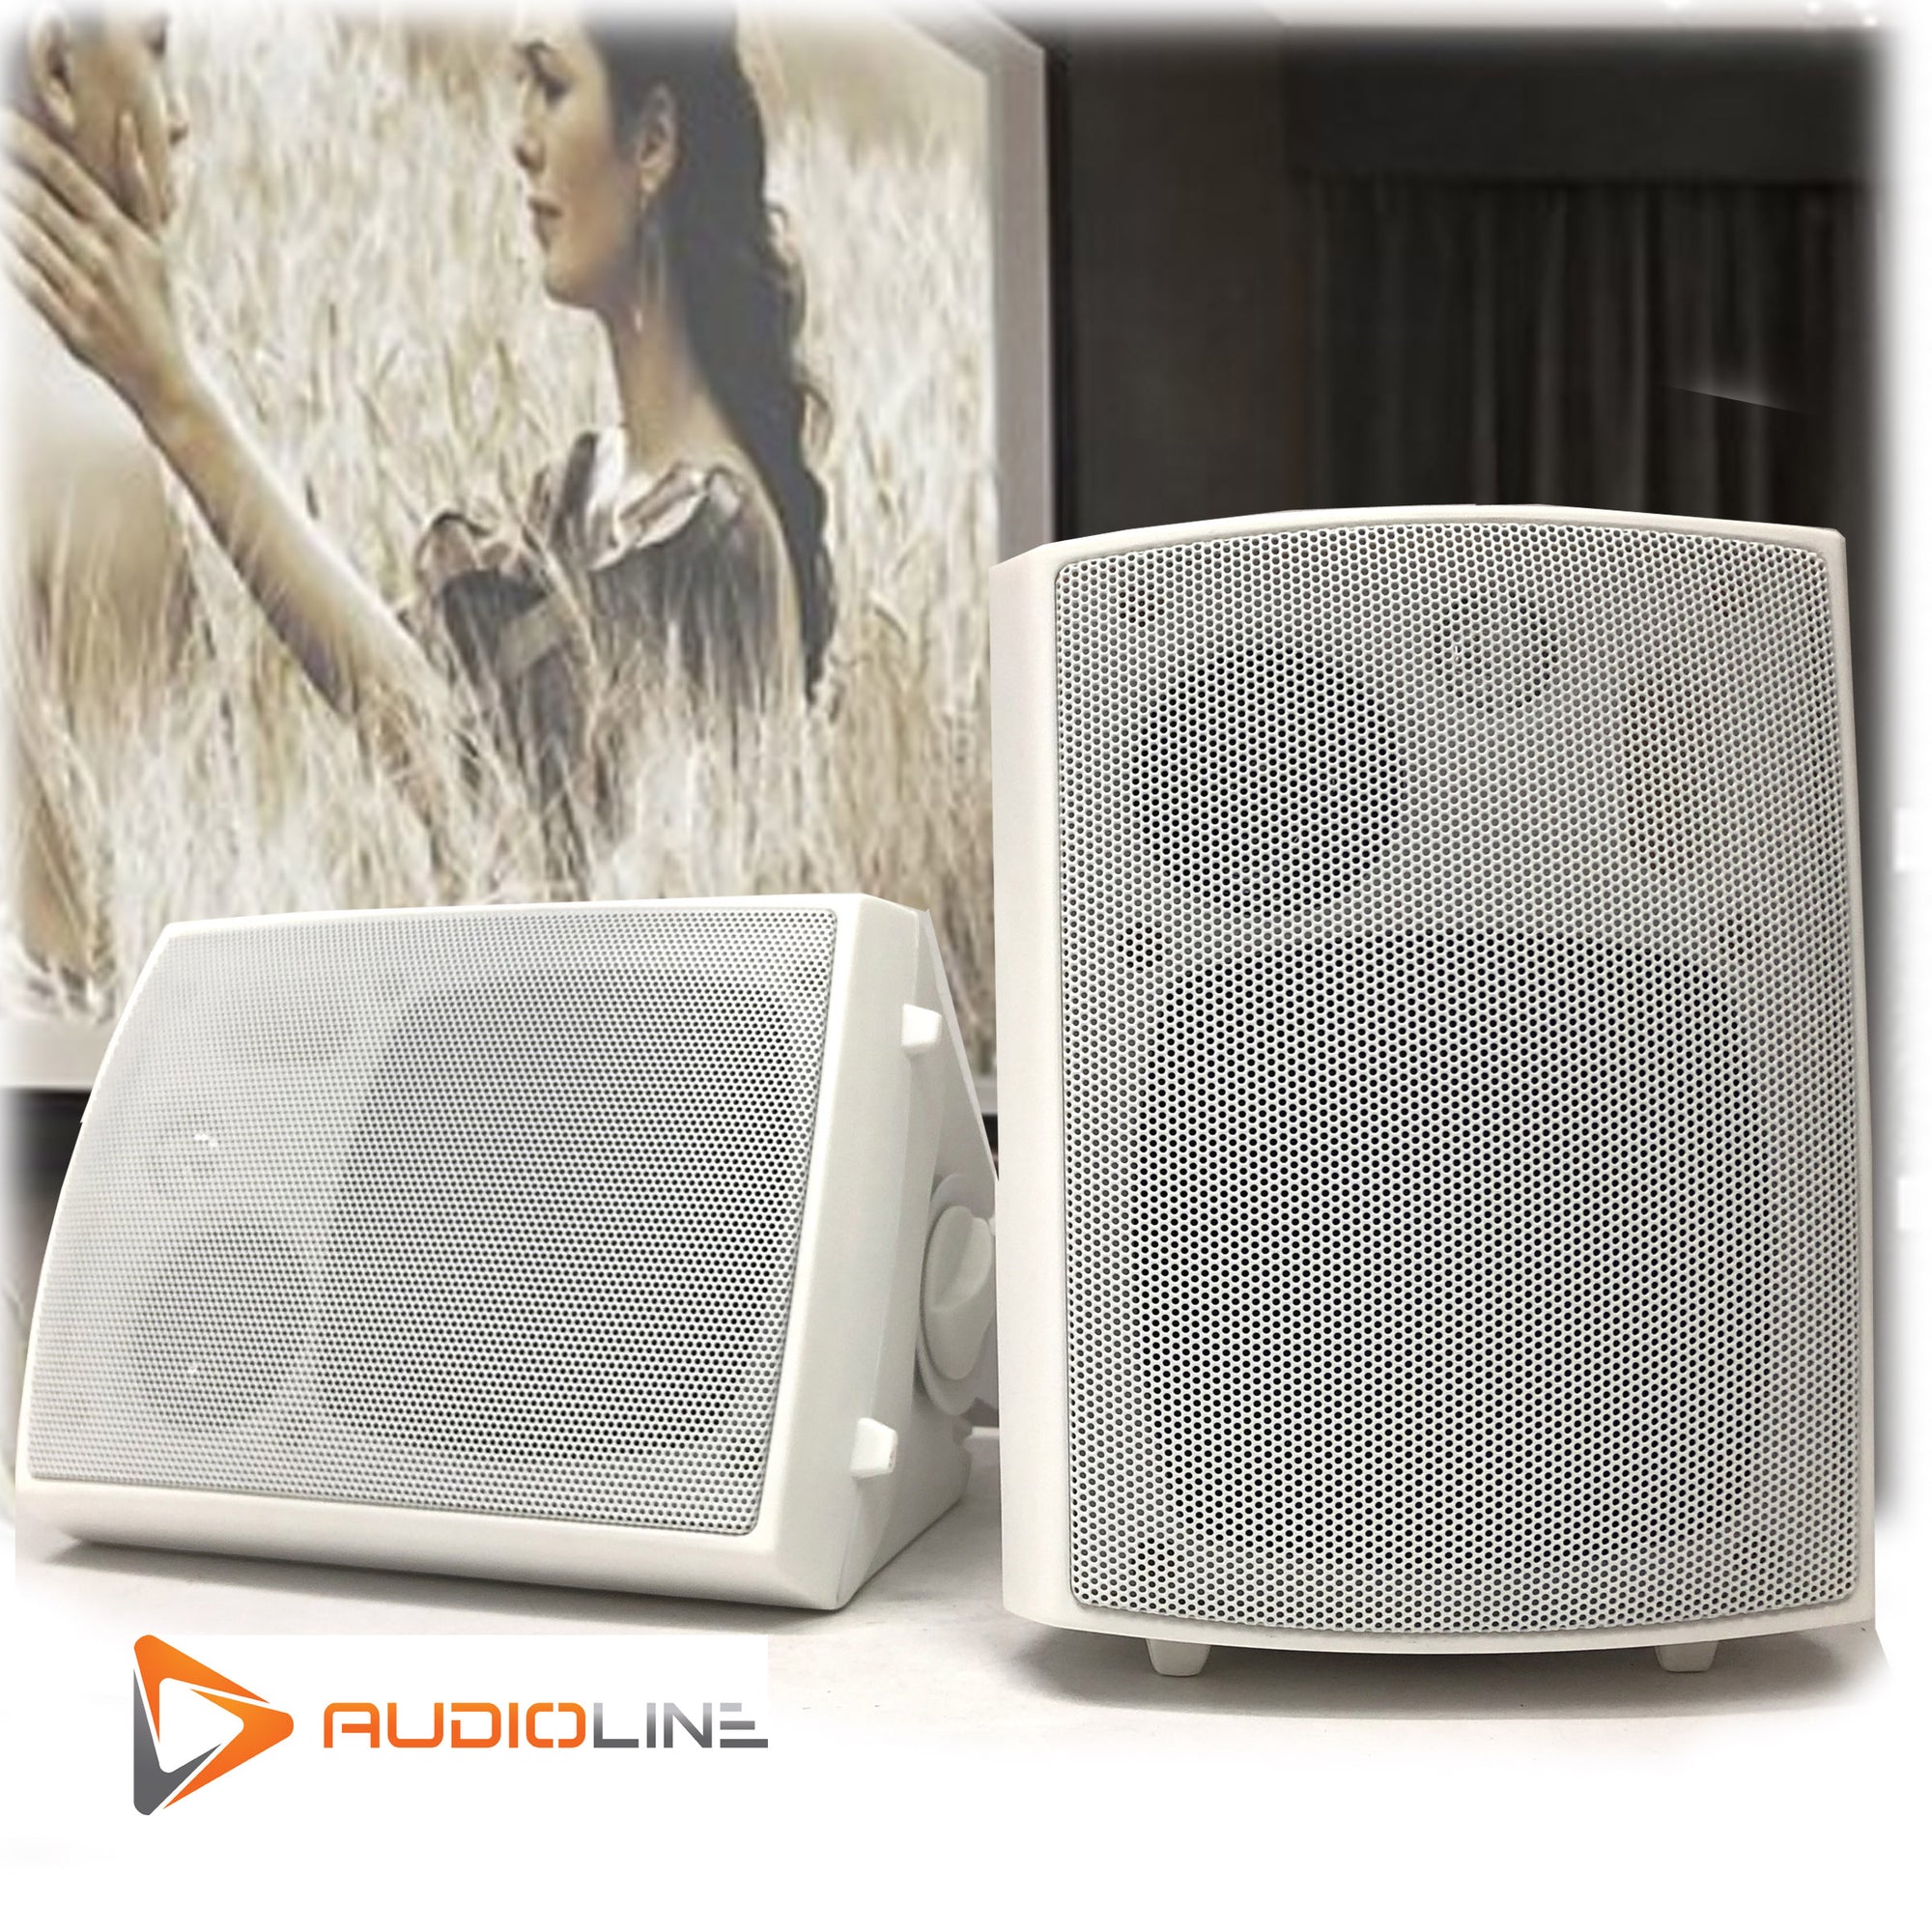 New Audioline Indoor Outdoor Speaker Pair 3-Way 4\" Bookshelf Wall / Ceiling Mount